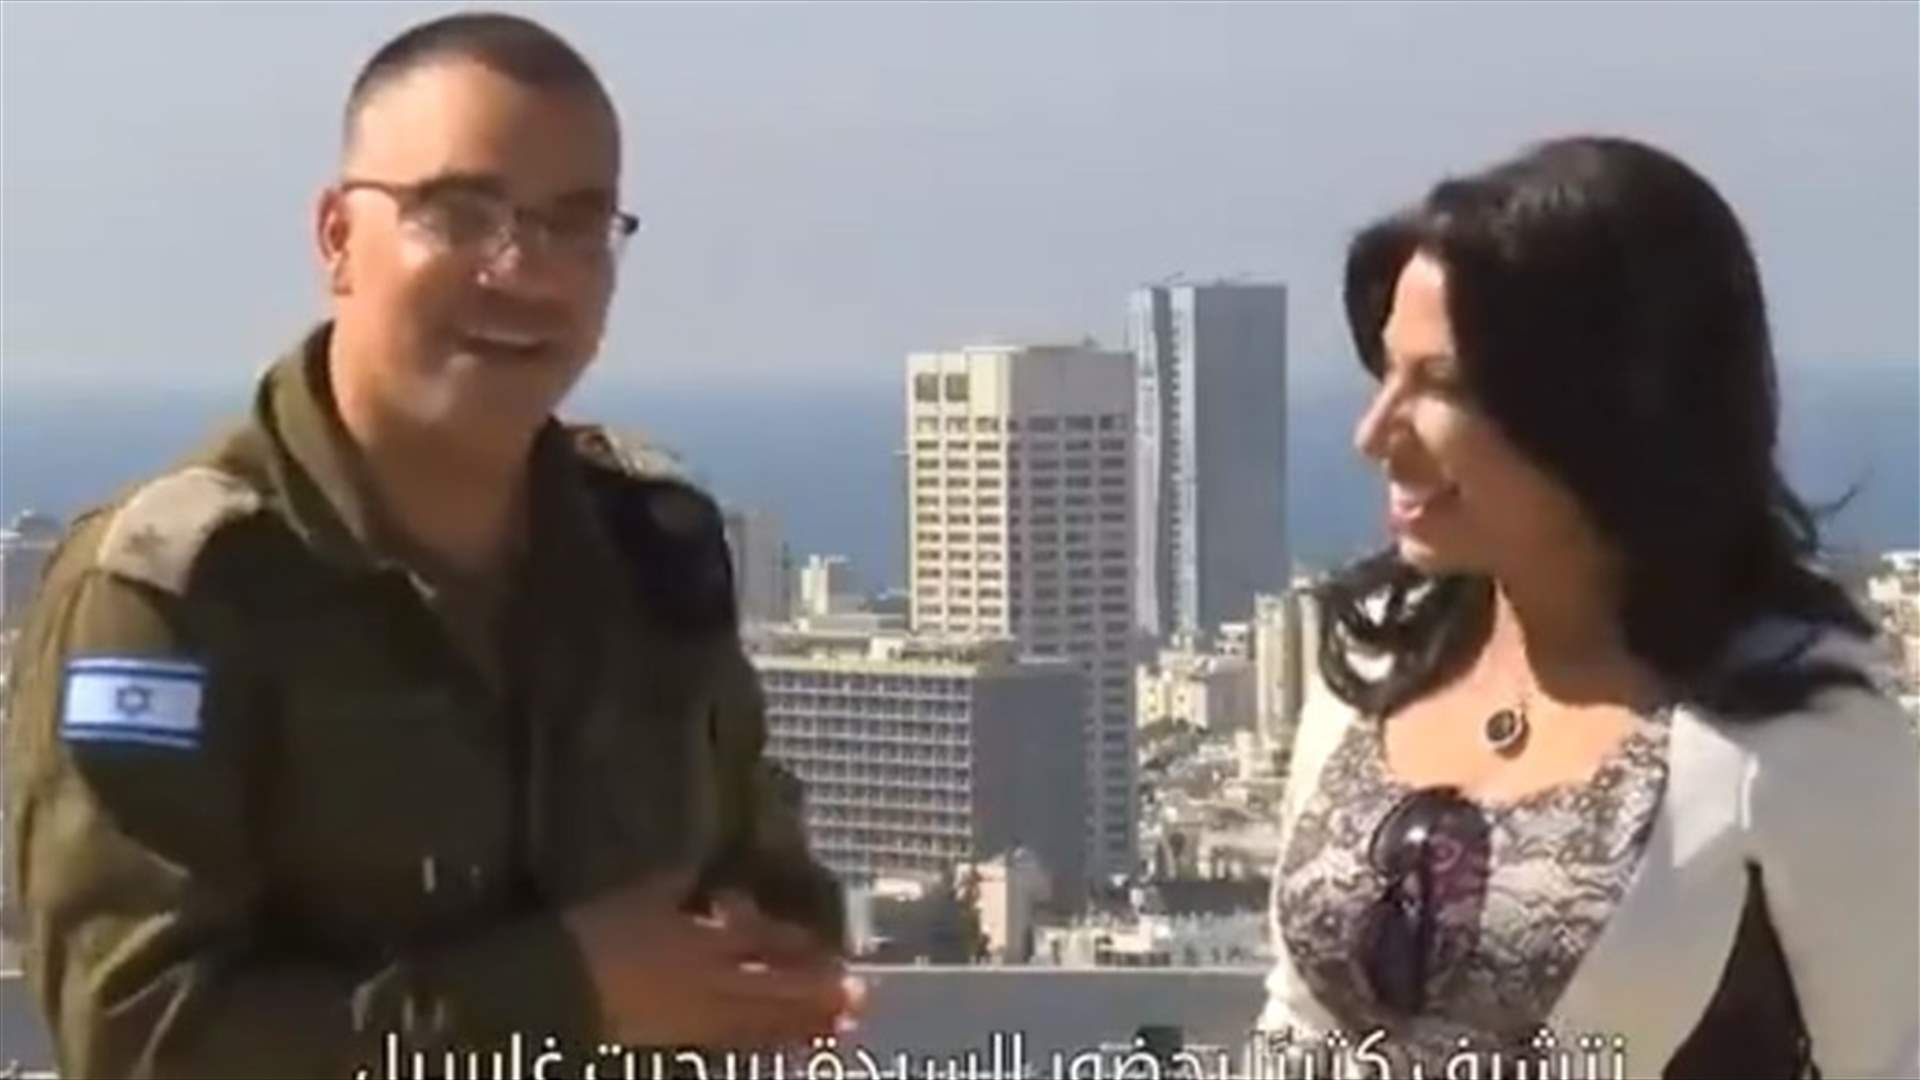 بالفيديو - لبنانية تلتقي المتحدث باسم الجيش الاسرائيلي في تل أبيب... وهذا ما قالته